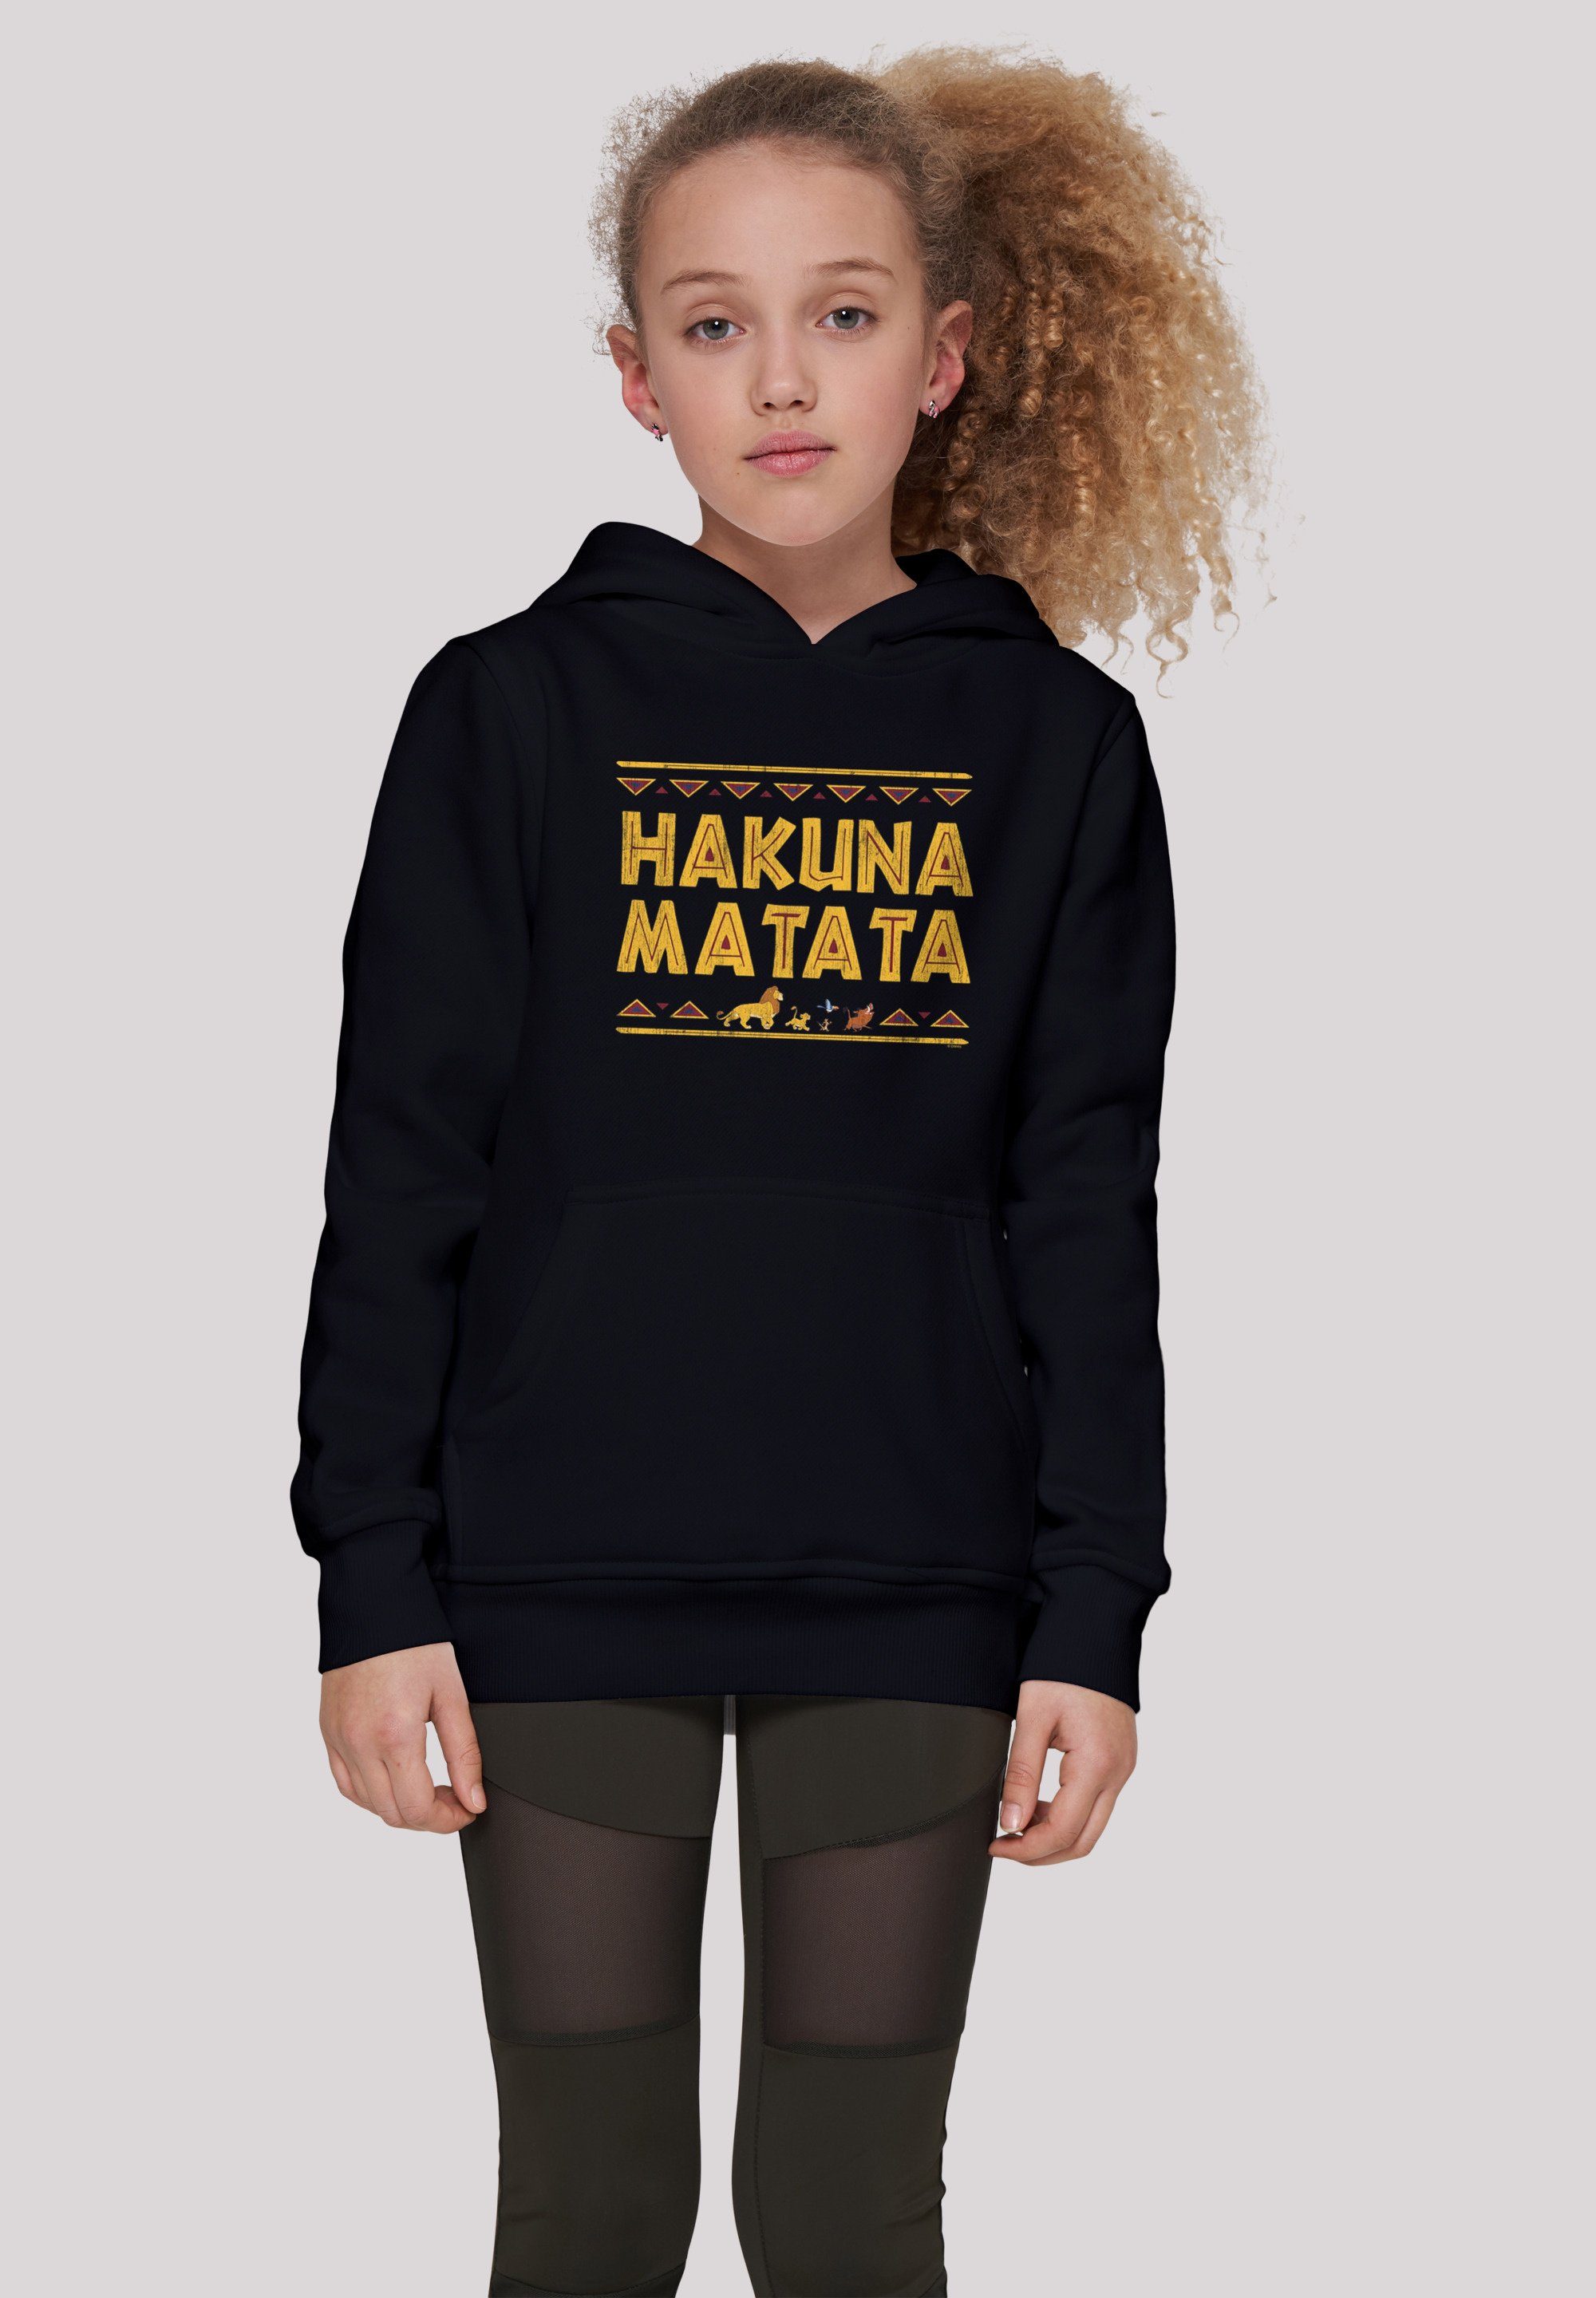 König schwarz Hakuna Matata Sweatshirt Unisex Disney Kinder,Premium der F4NT4STIC Merch,Jungen,Mädchen,Bedruckt Löwen